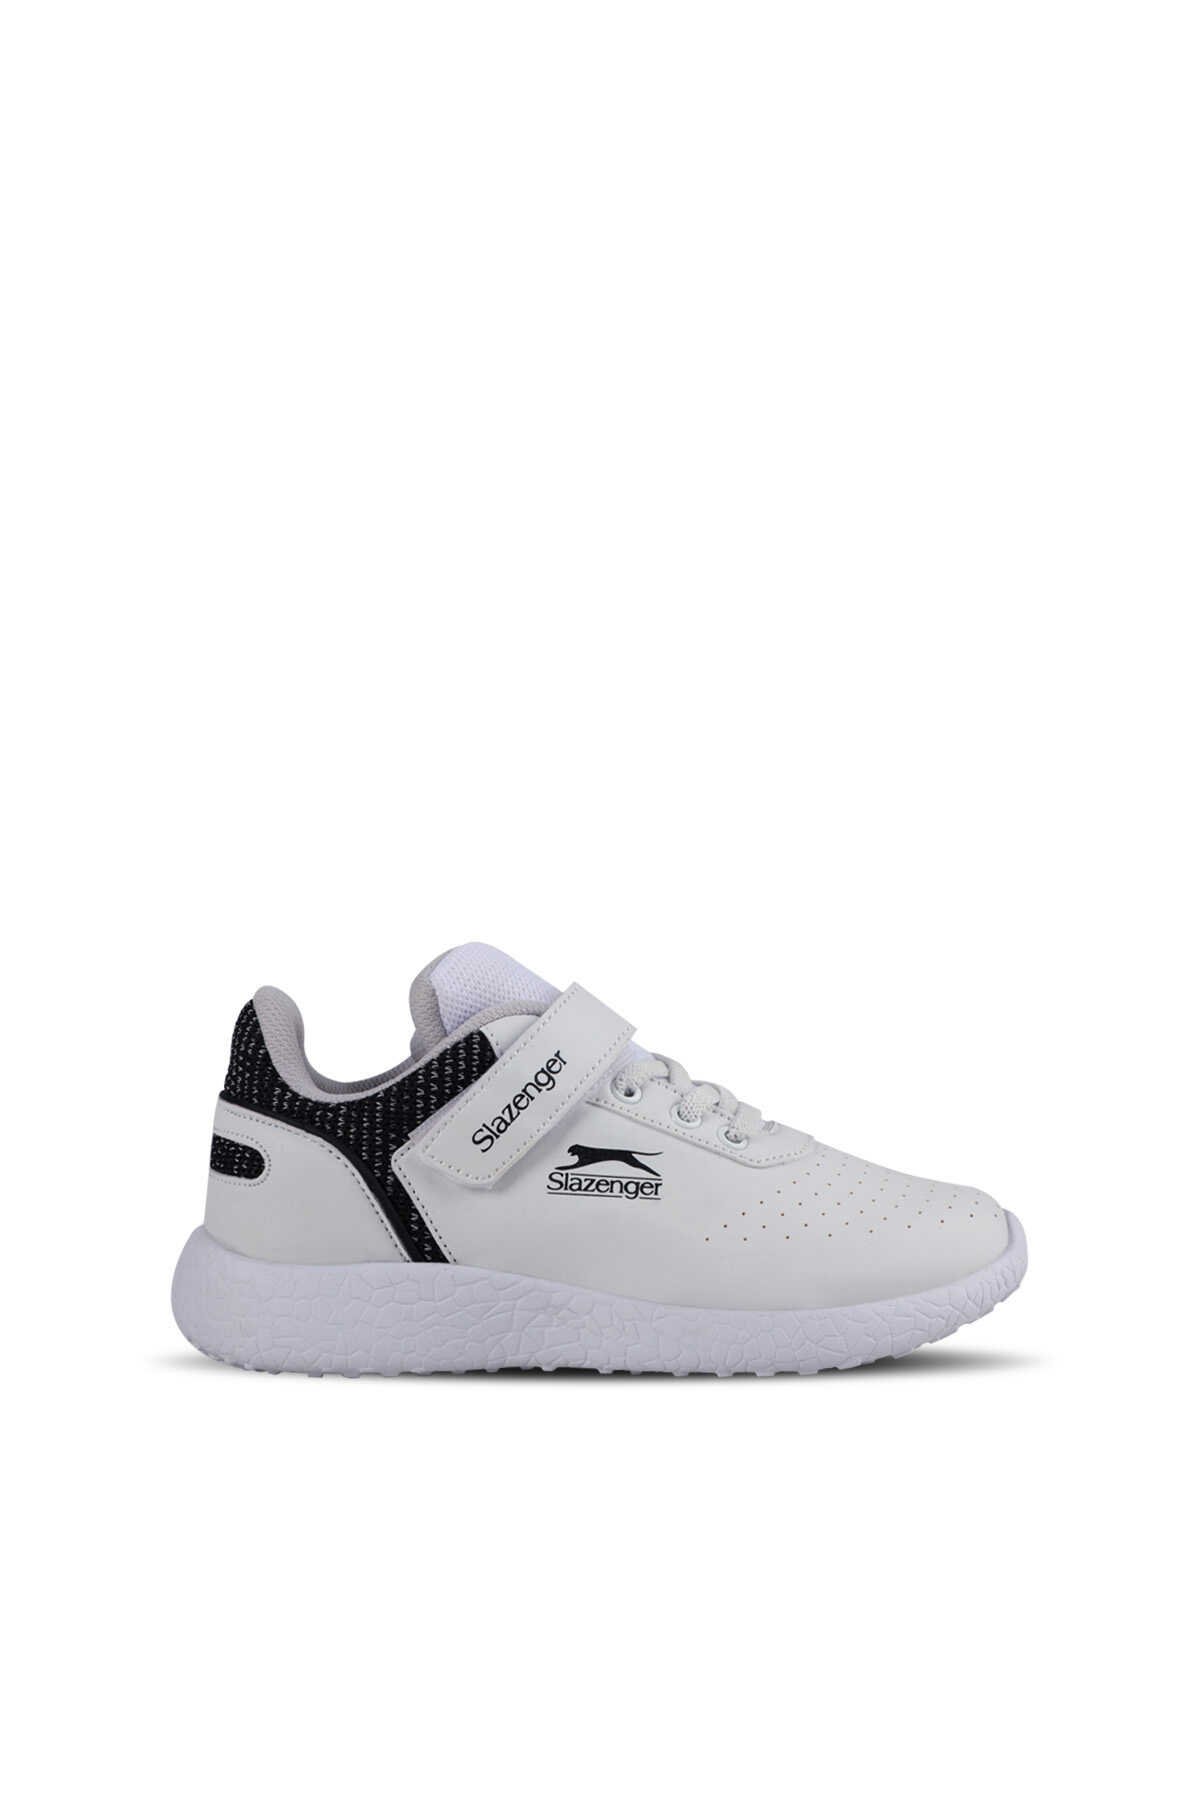 Slazenger - Slazenger BASKET I Sneaker Unisex Çocuk Ayakkabı Beyaz / Siyah